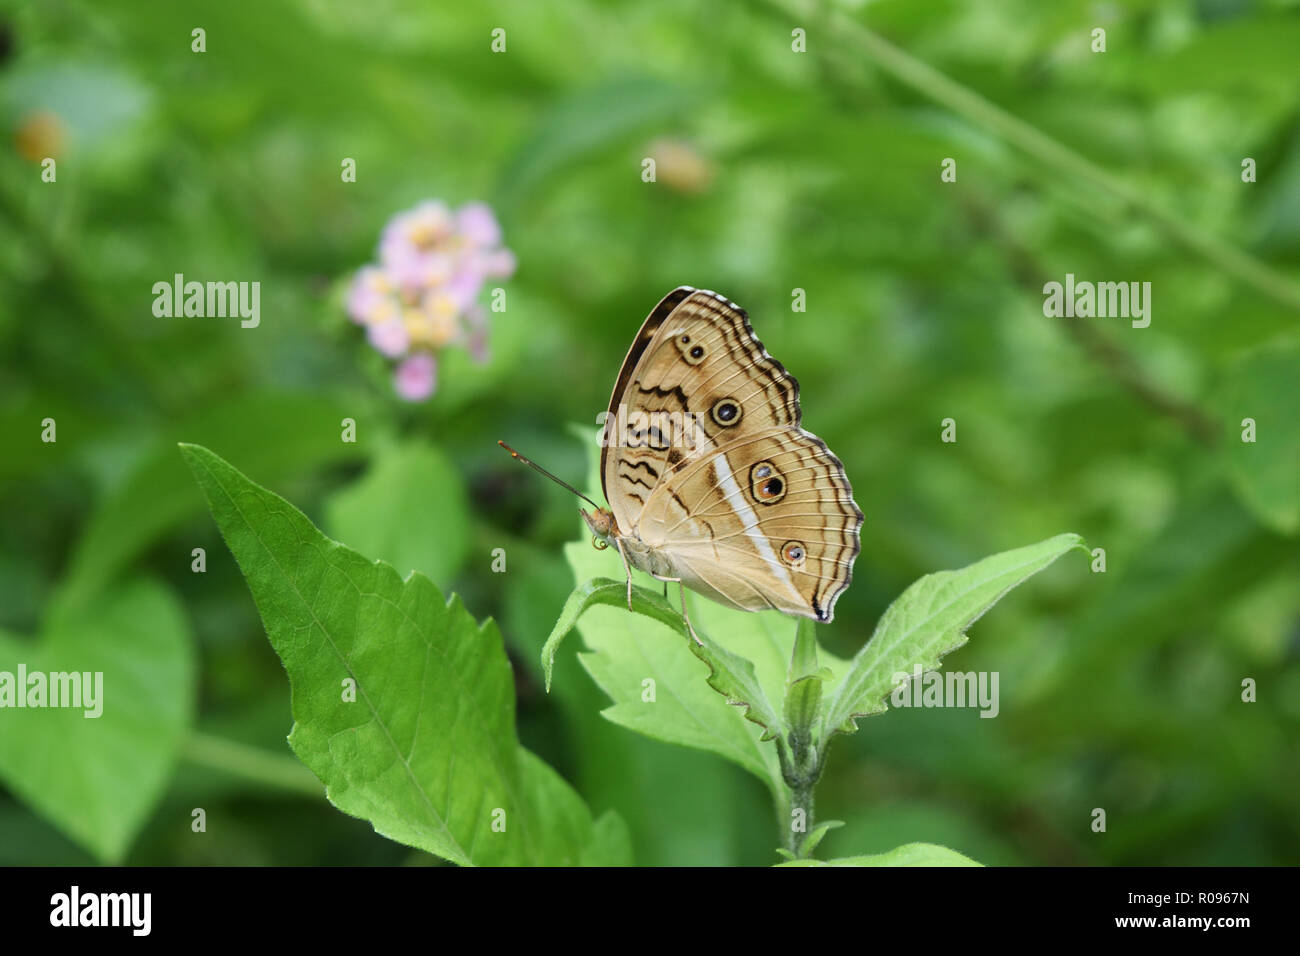 Der Pfau Pansy Schmetterling auf Blatt im Feld mit natürlichen, grünen Hintergrund, schwarze Muster ähnlich den Augen auf orange Farbe Flügel der Insekten Stockfoto